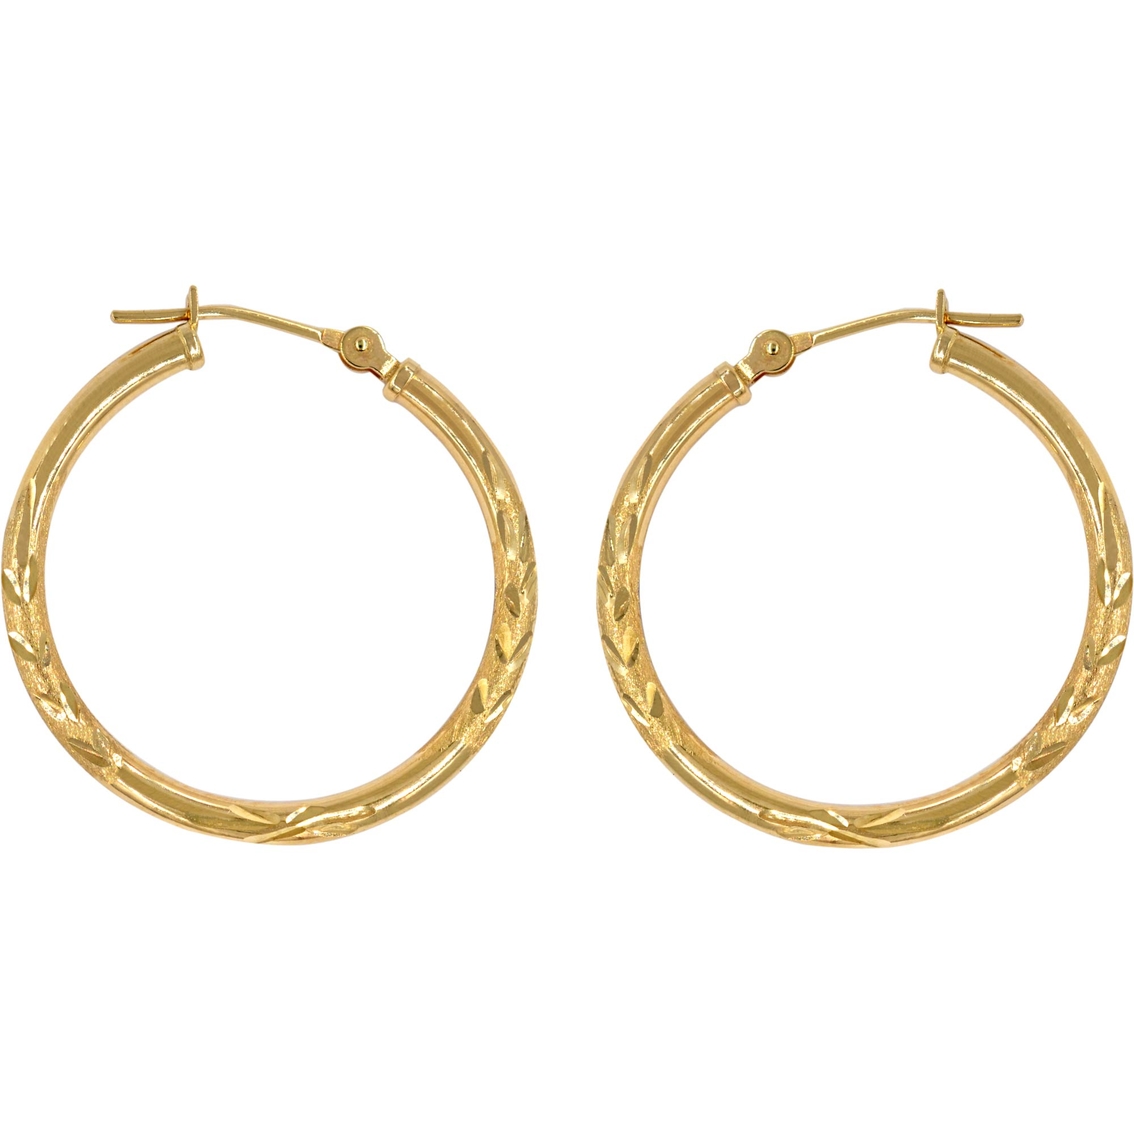 14k Gold Diamond Cut Hoop Earrings | Gold Earrings | Jewelry & Watches ...